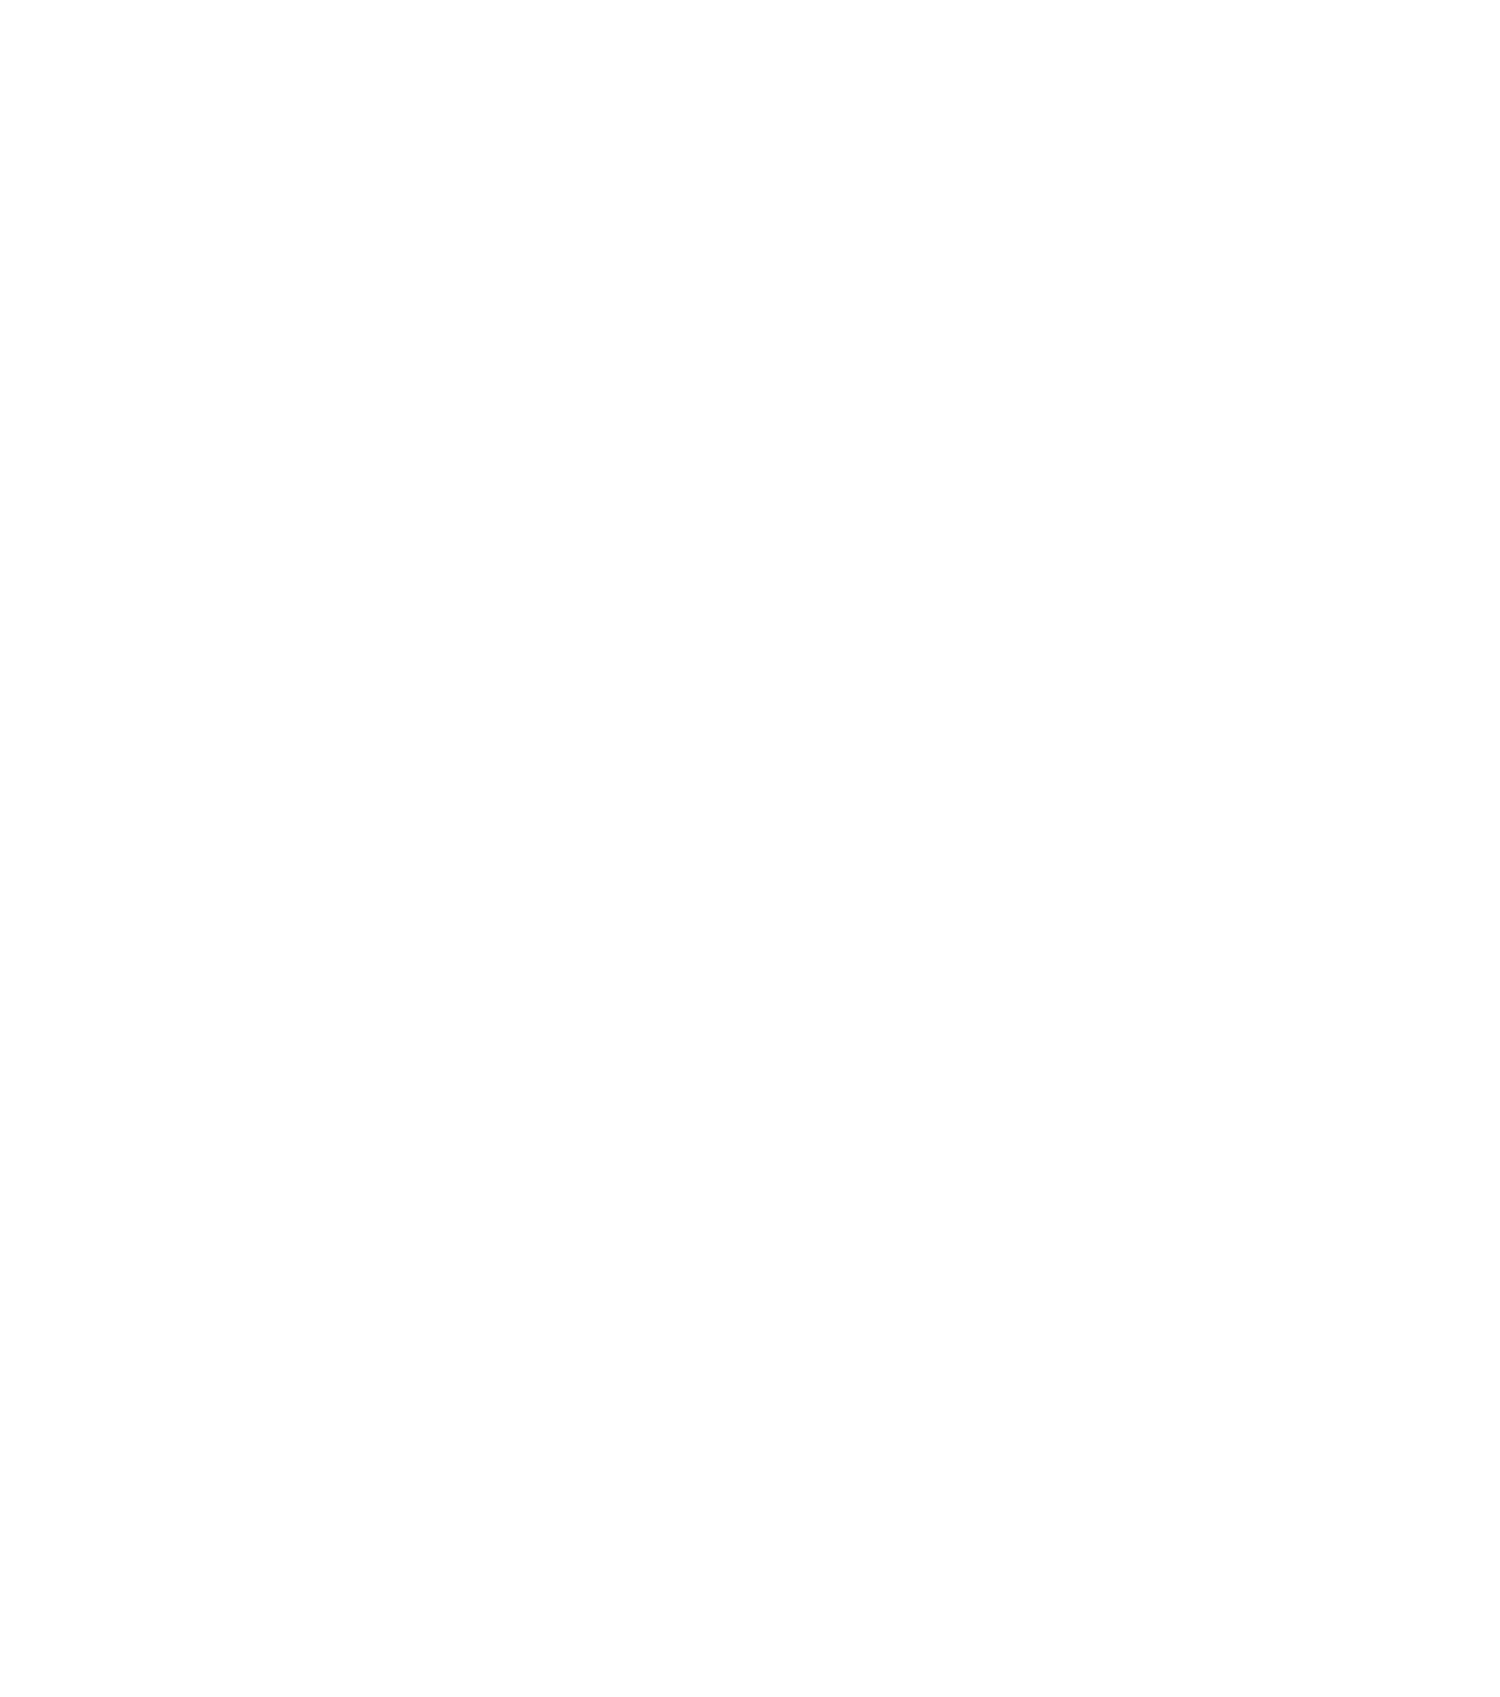 LionCap Global Management